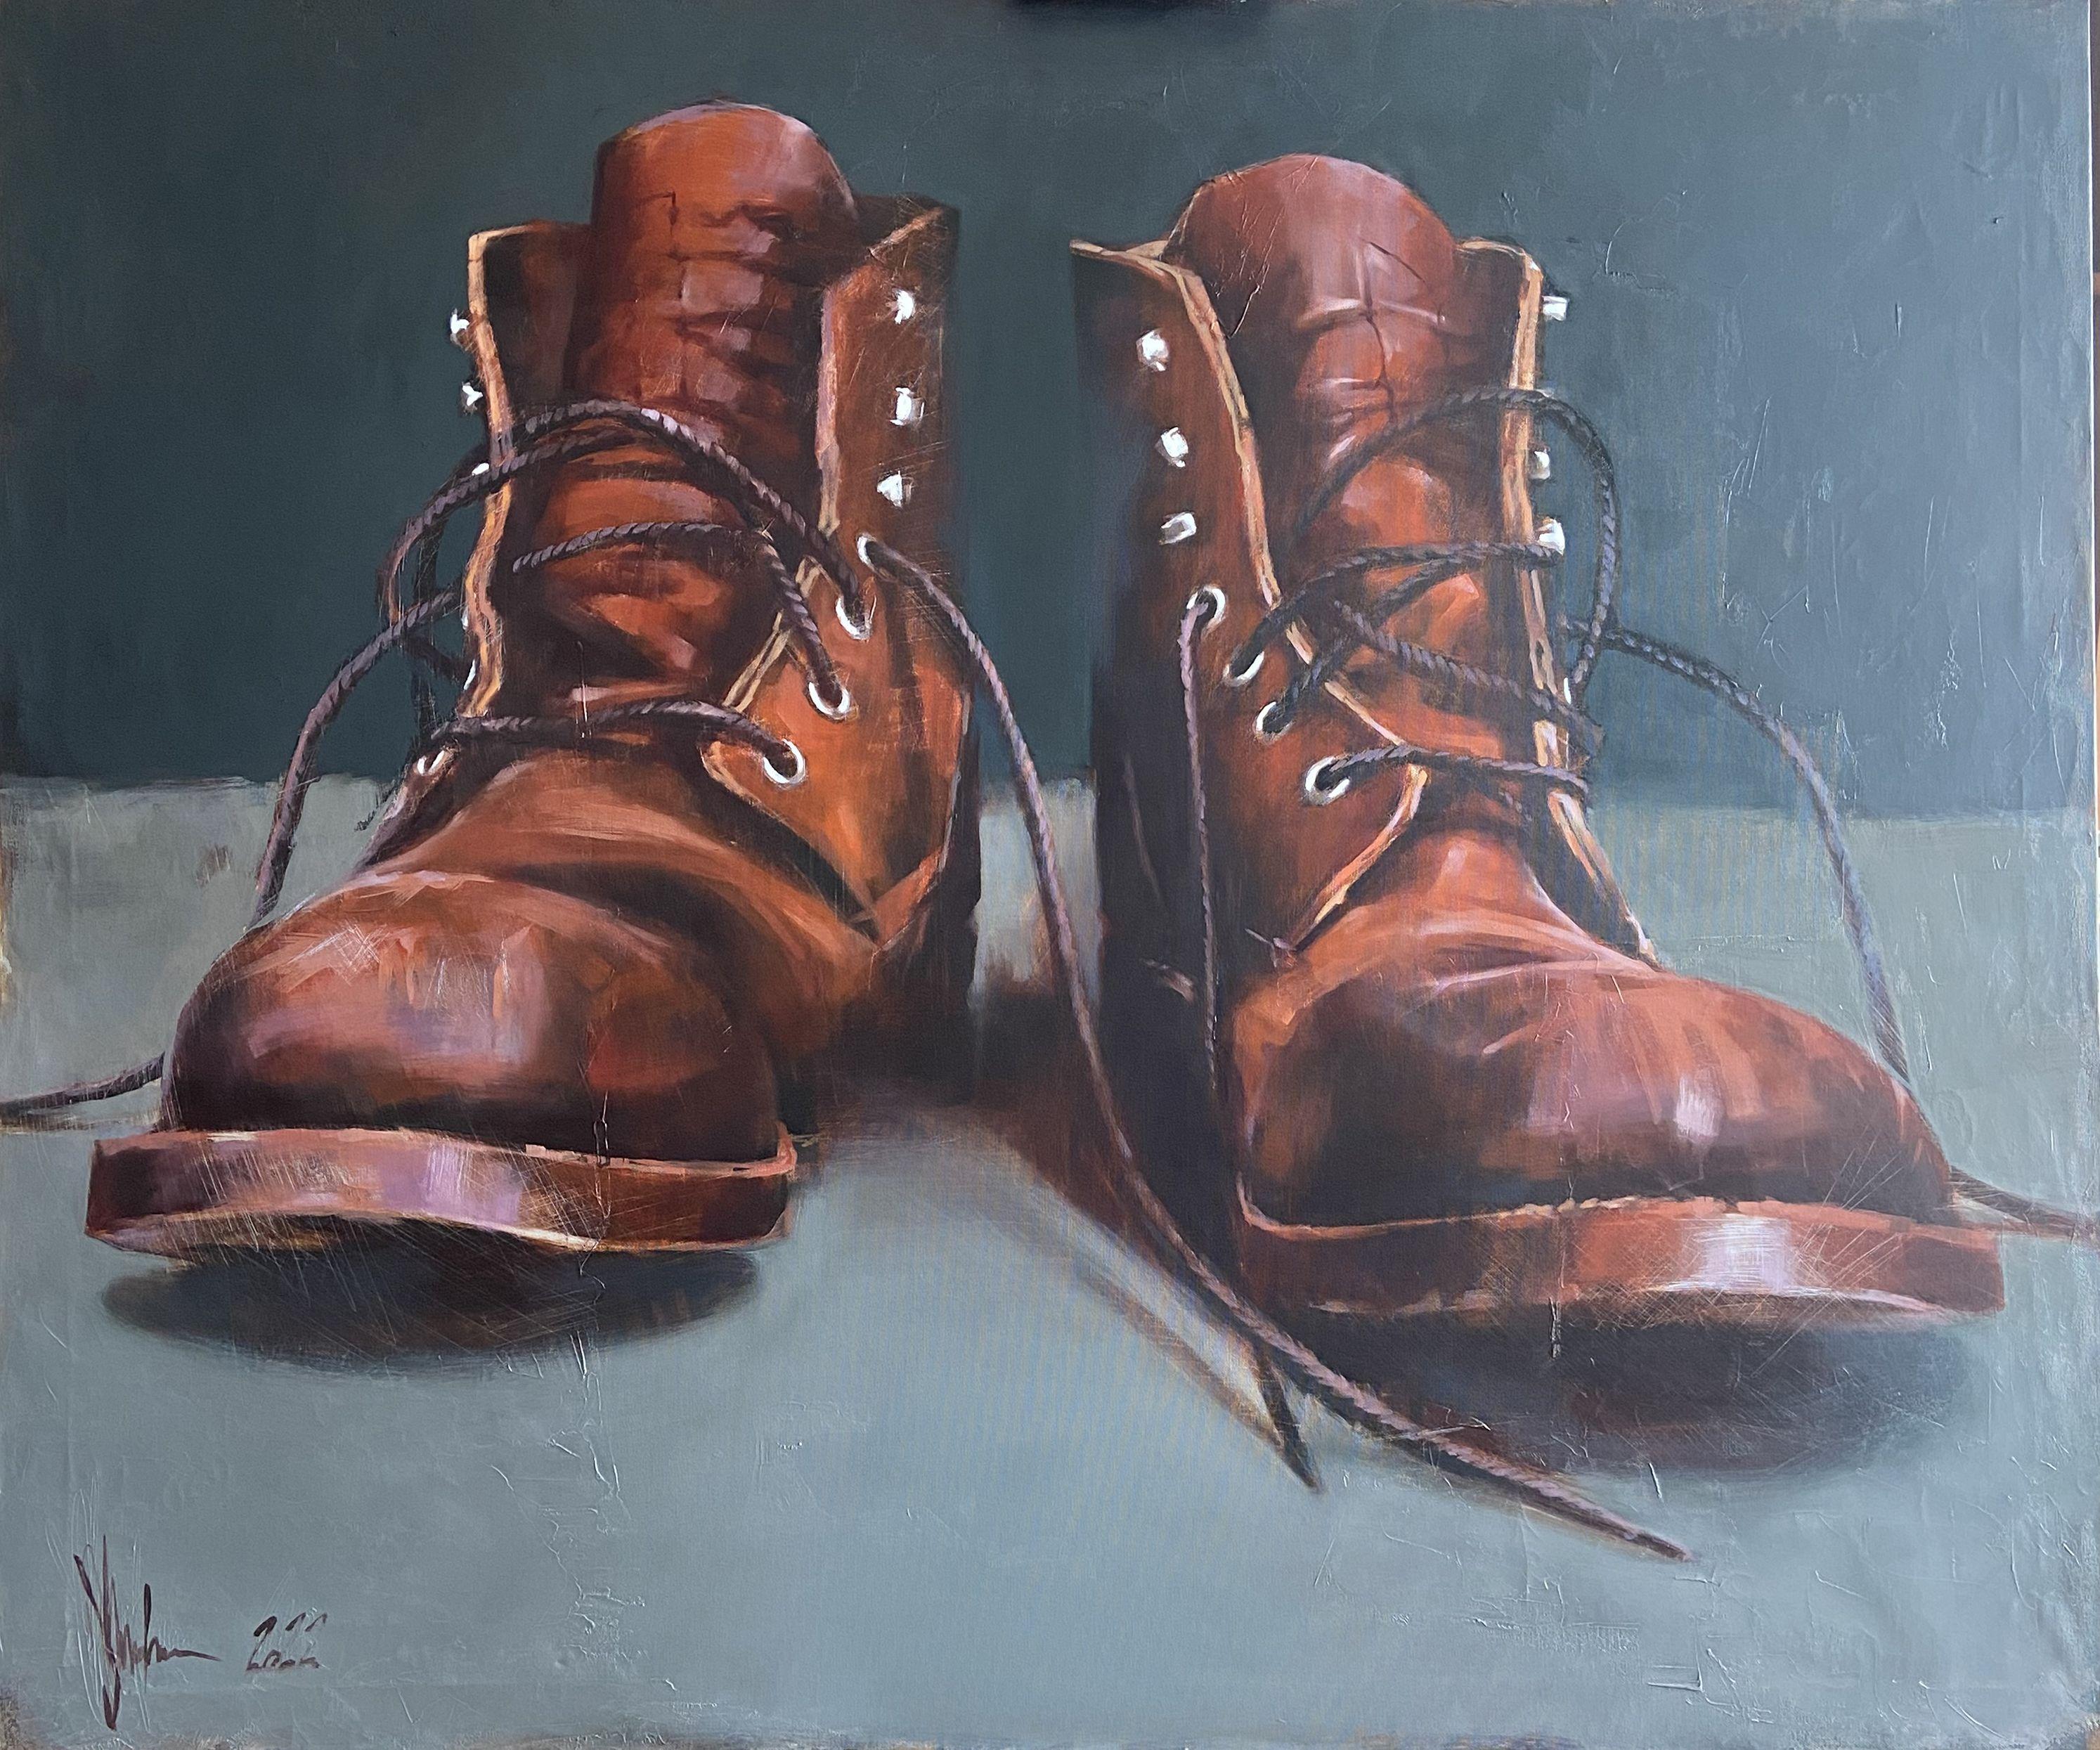 Just shoes, Peinture, Huile sur toile - Painting de Igor Shulman